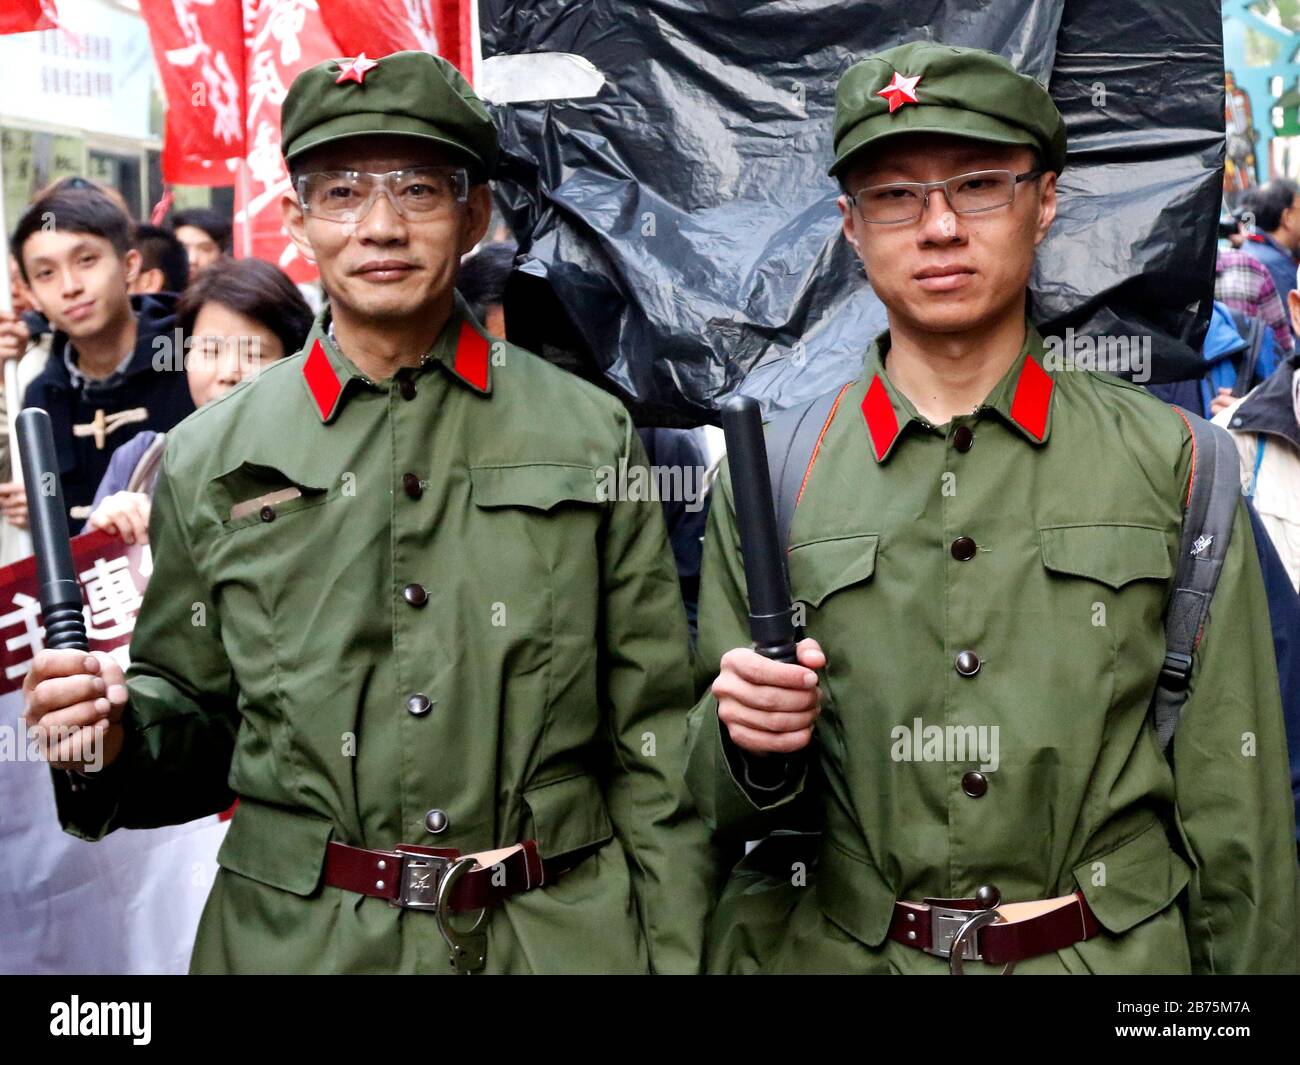 Deux hommes s'habillent dans le style d'un soldat chinois de l'époque de Mao le 1er janvier 2018 à Hong Kong. Une gare ferroviaire sera occupée par des agents chinois de l'immigration et des policiers après que les autorités chinoises auront statué qu'une partie d'une gare ferroviaire de la ville serait régie par la loi continentale. Banque D'Images